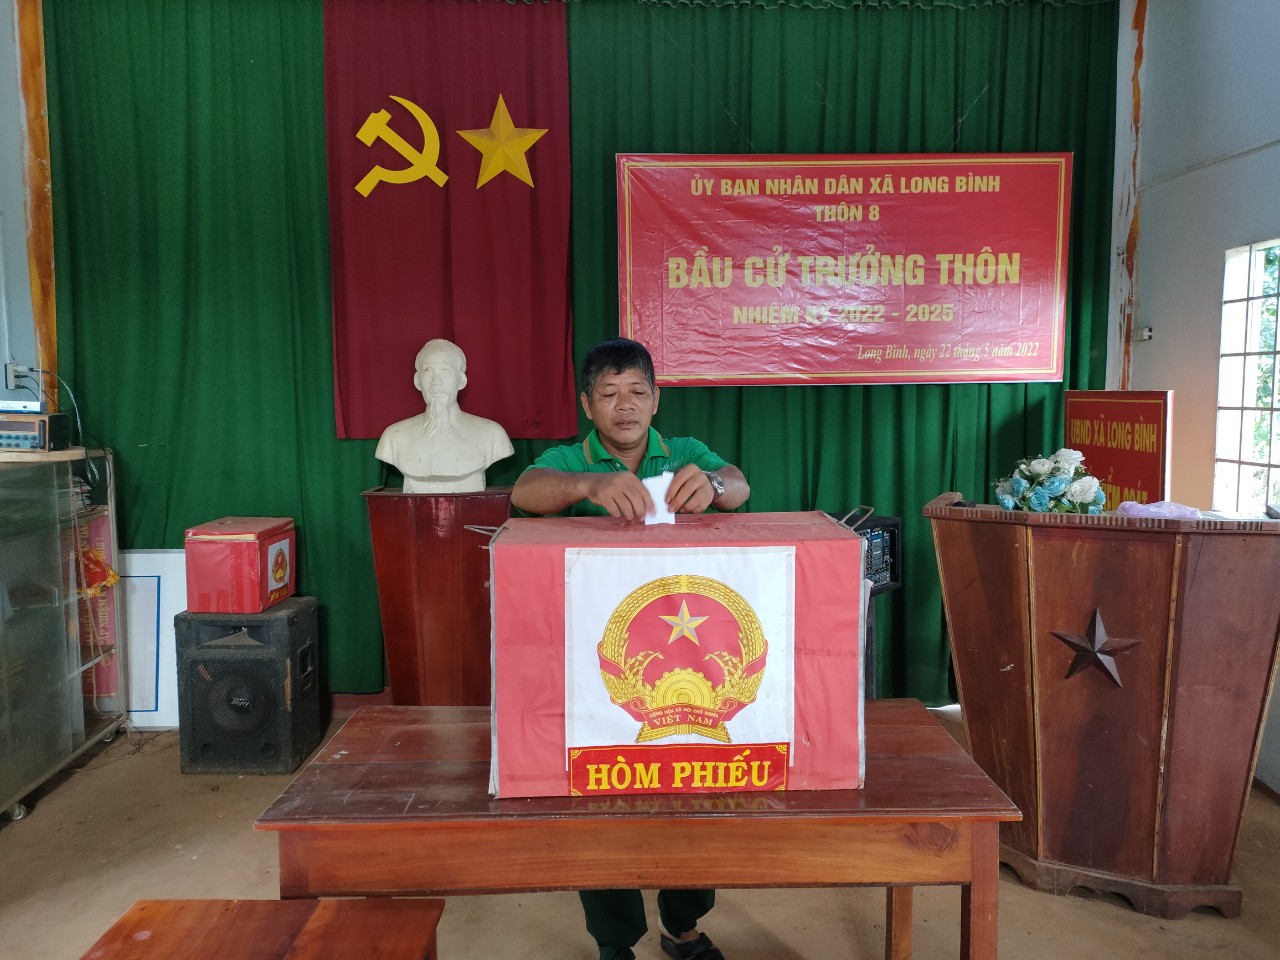 Xã Long Bình hoàn thành bầu cử trưởng thôn nhiệm kỳ 2022-2025